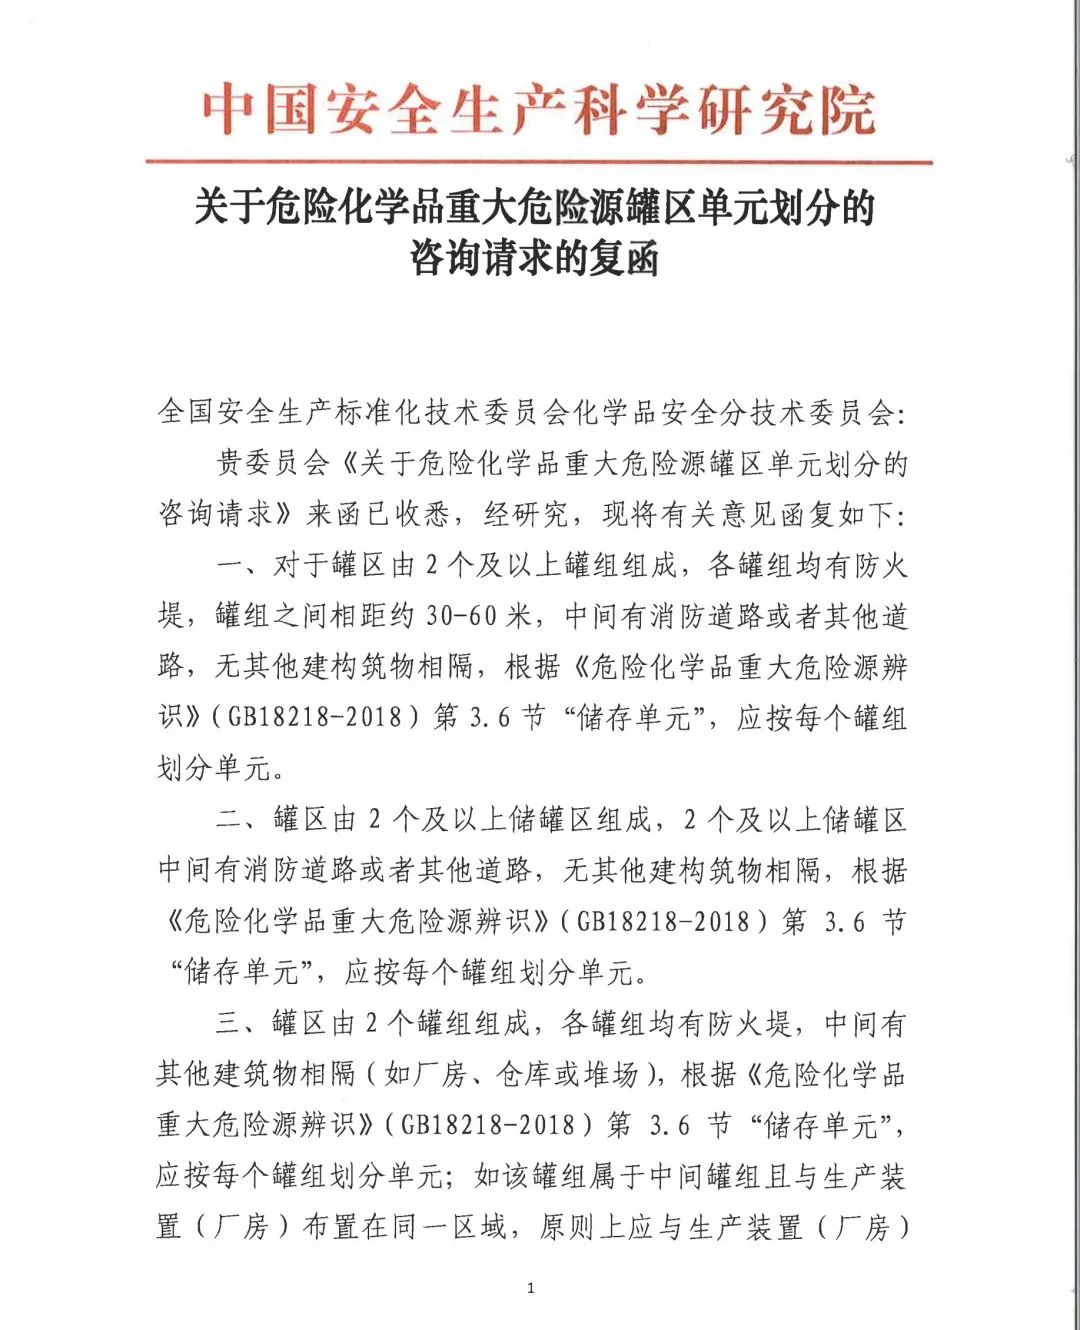 中国安科院关于危险化学品重大危险源罐区单元划分的咨询请求的复函(图1)